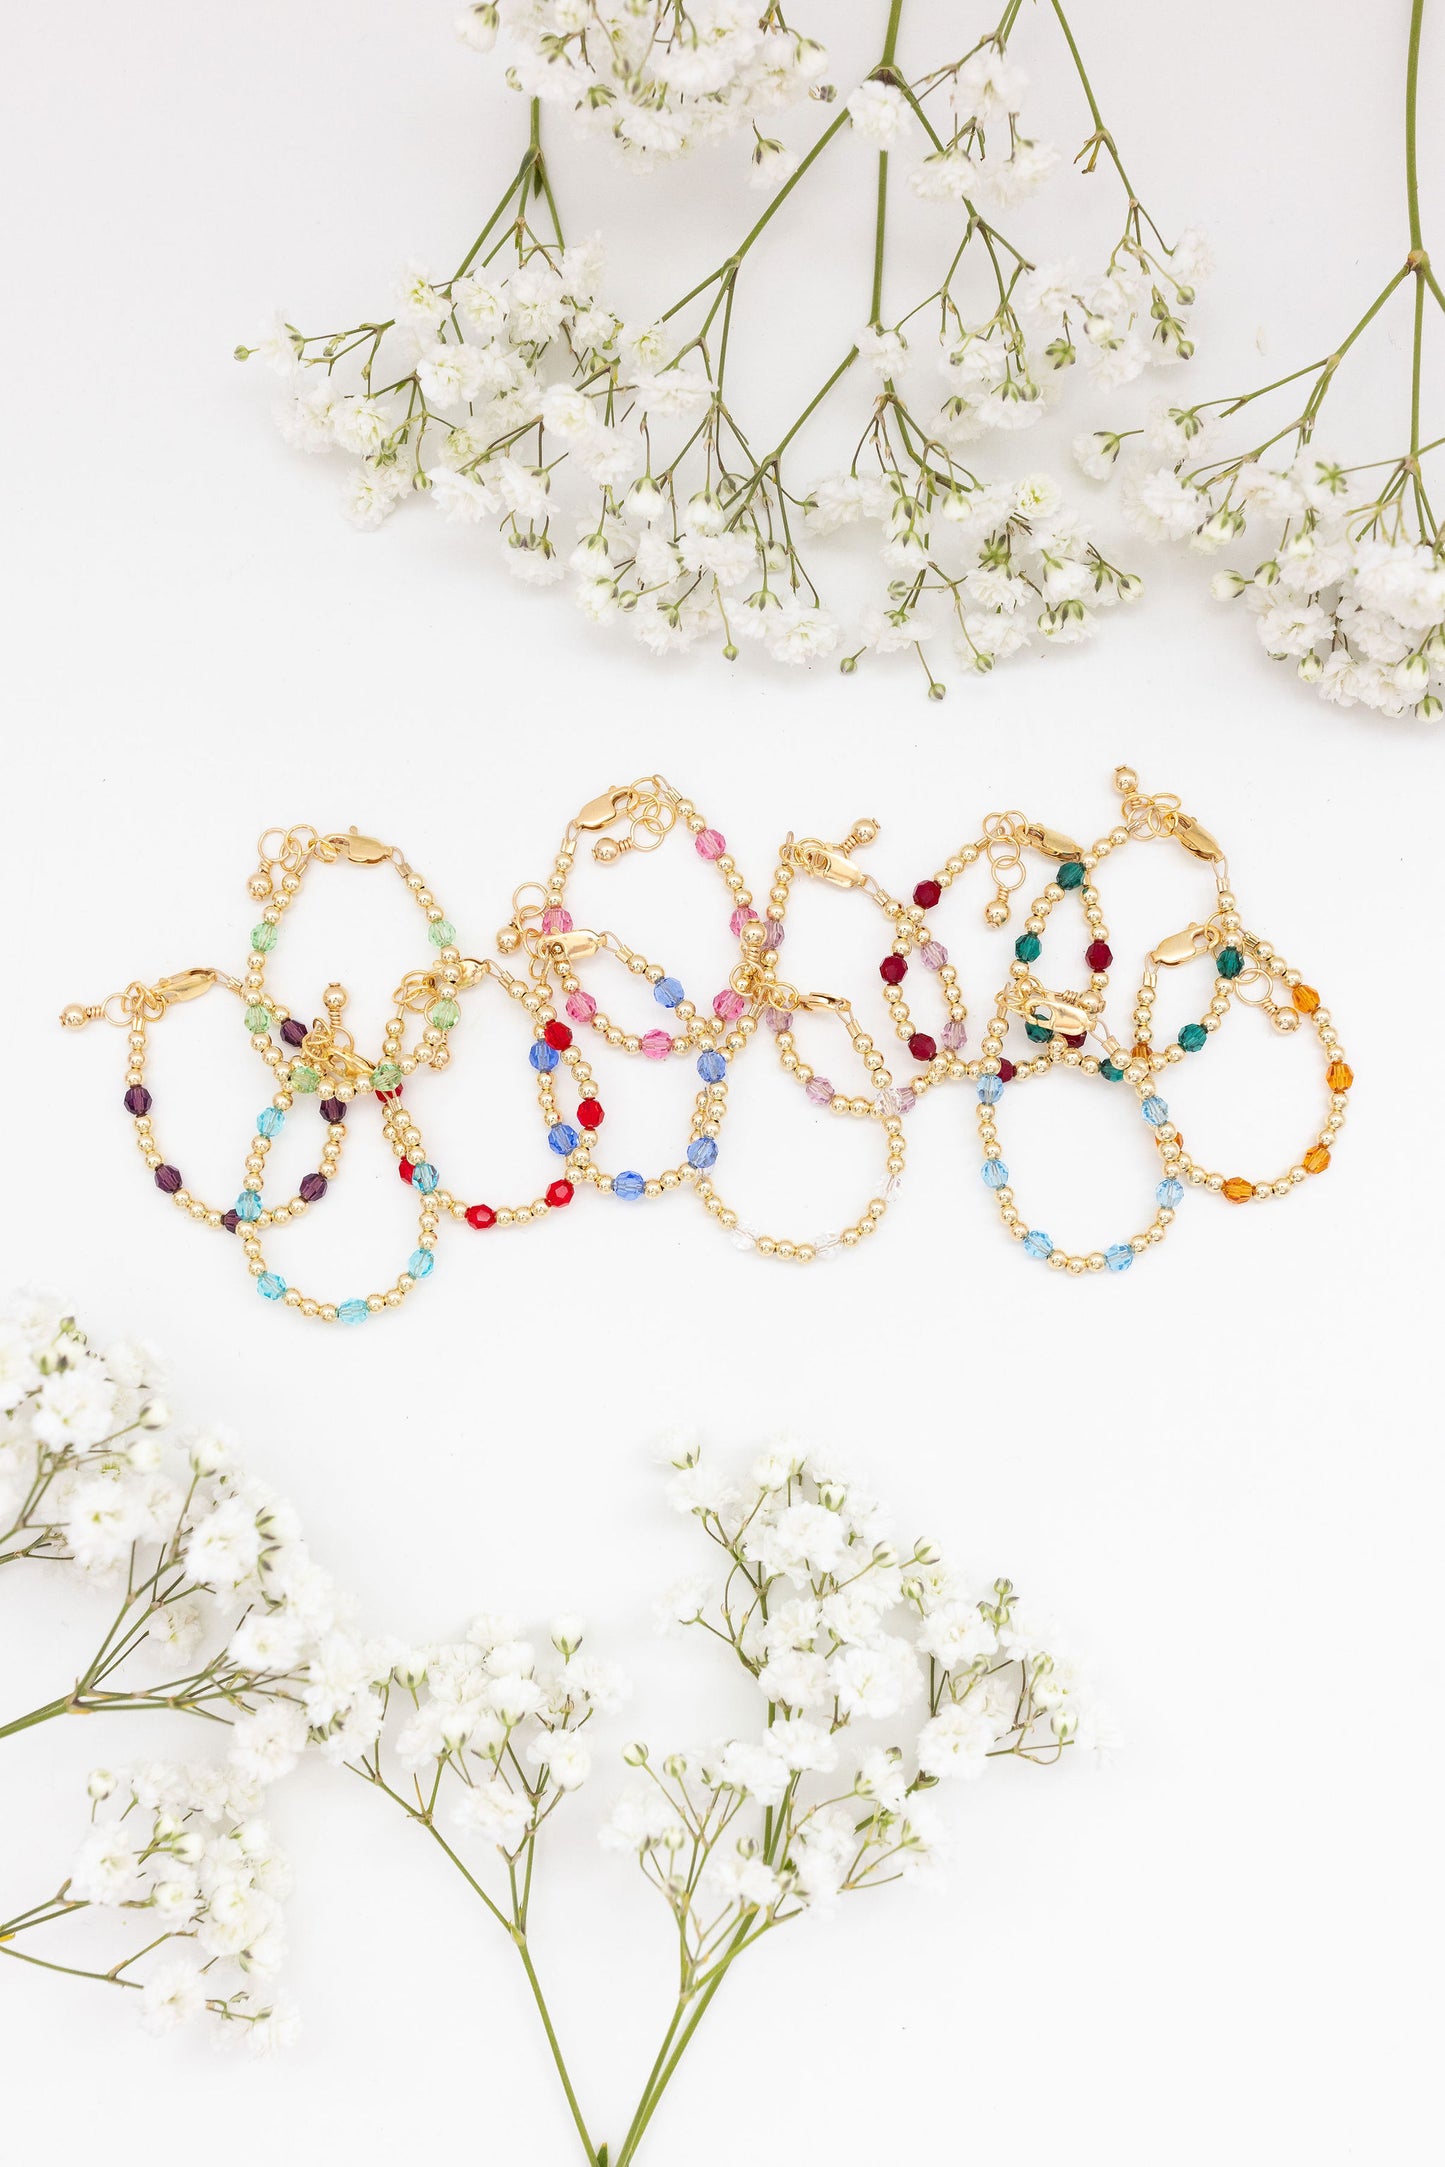 September Birthstone Dotted Mom + Mini Bracelet Set (3MM + 4MM Beads)